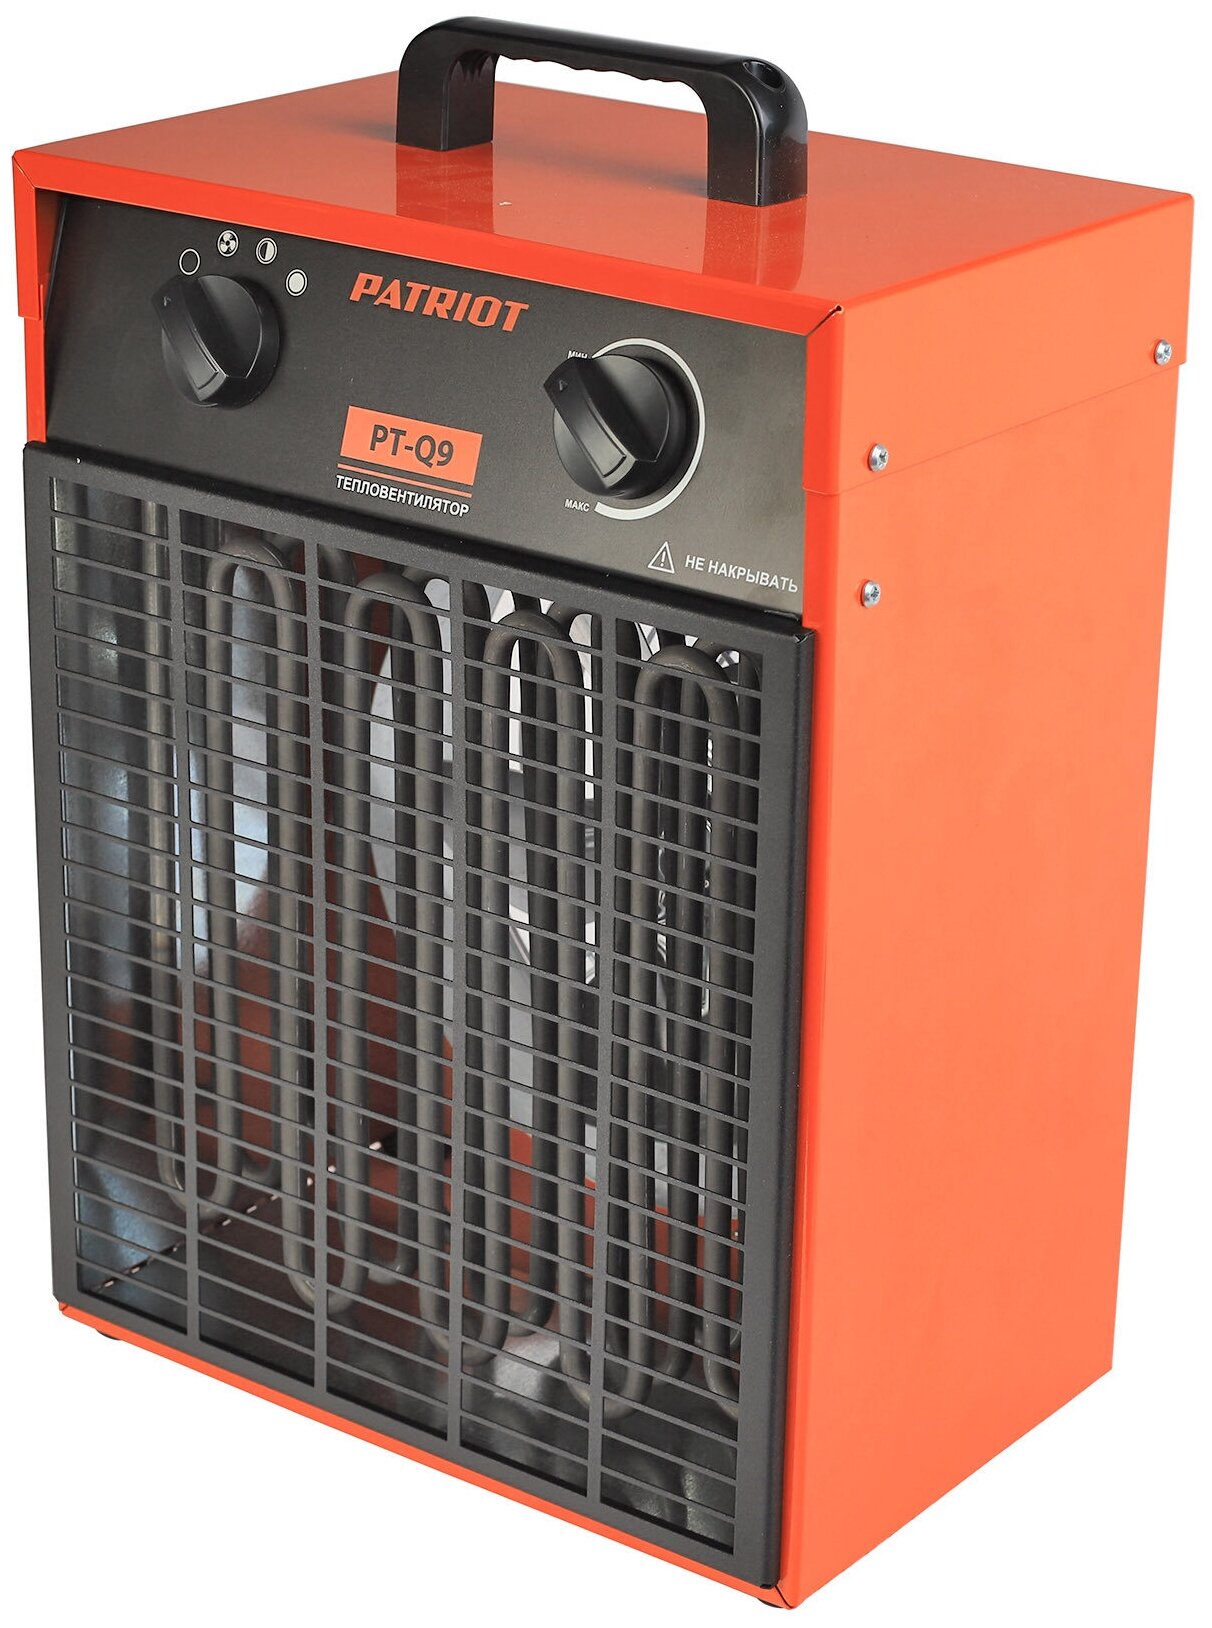 Тепловентилятор электрический PATRIOT PT-Q 9 400В терморегулятор ТЭН кабельный ввод / портативный обогреватель / бытовой / тепловая пушка